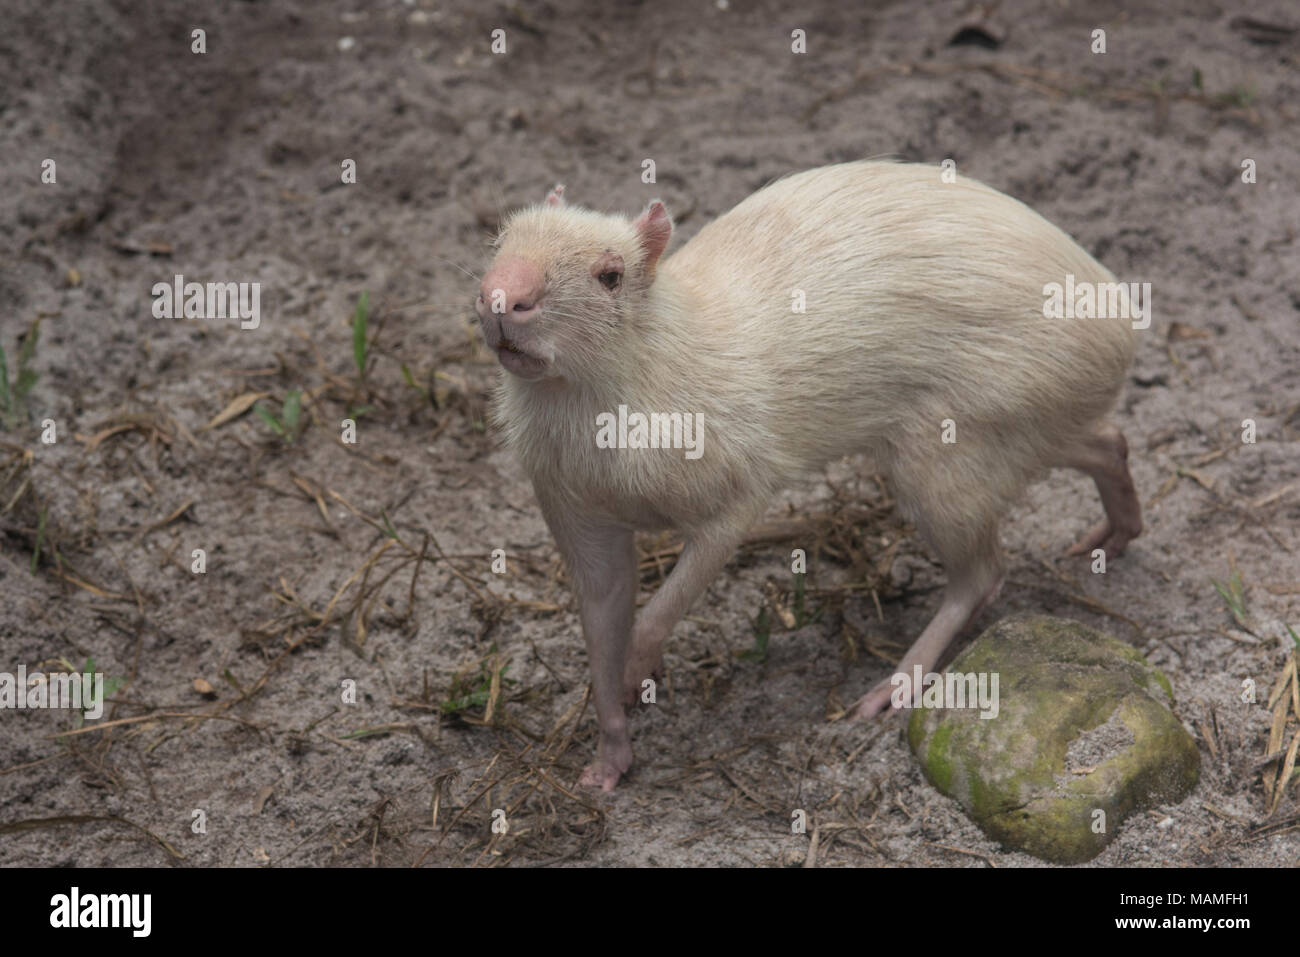 Un albino agouti desde San Martín, Perú. No es un animal salvaje, sino que se mantuvo en una conservación/centro de rescate. Foto de stock